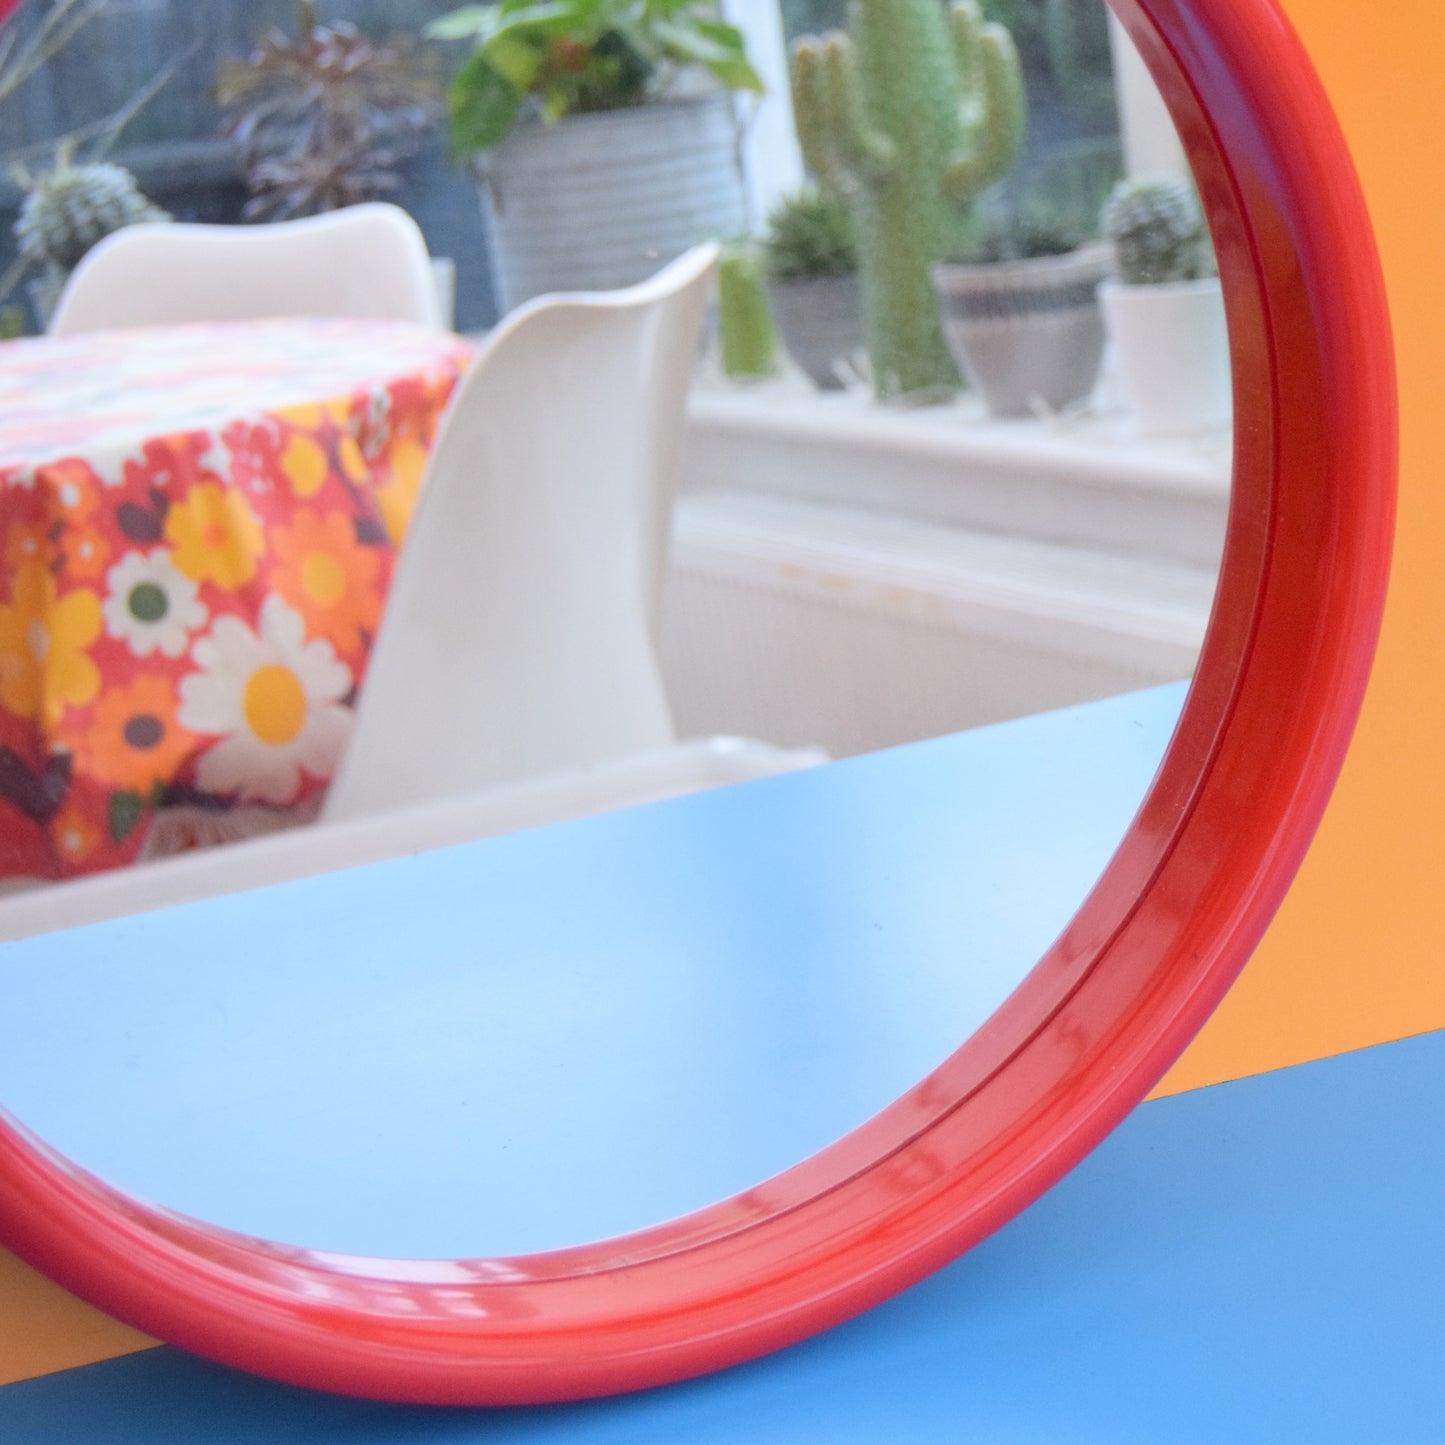 Vintage 1970s Finnmirror -  Round Plastic Mirror - Finland - Red